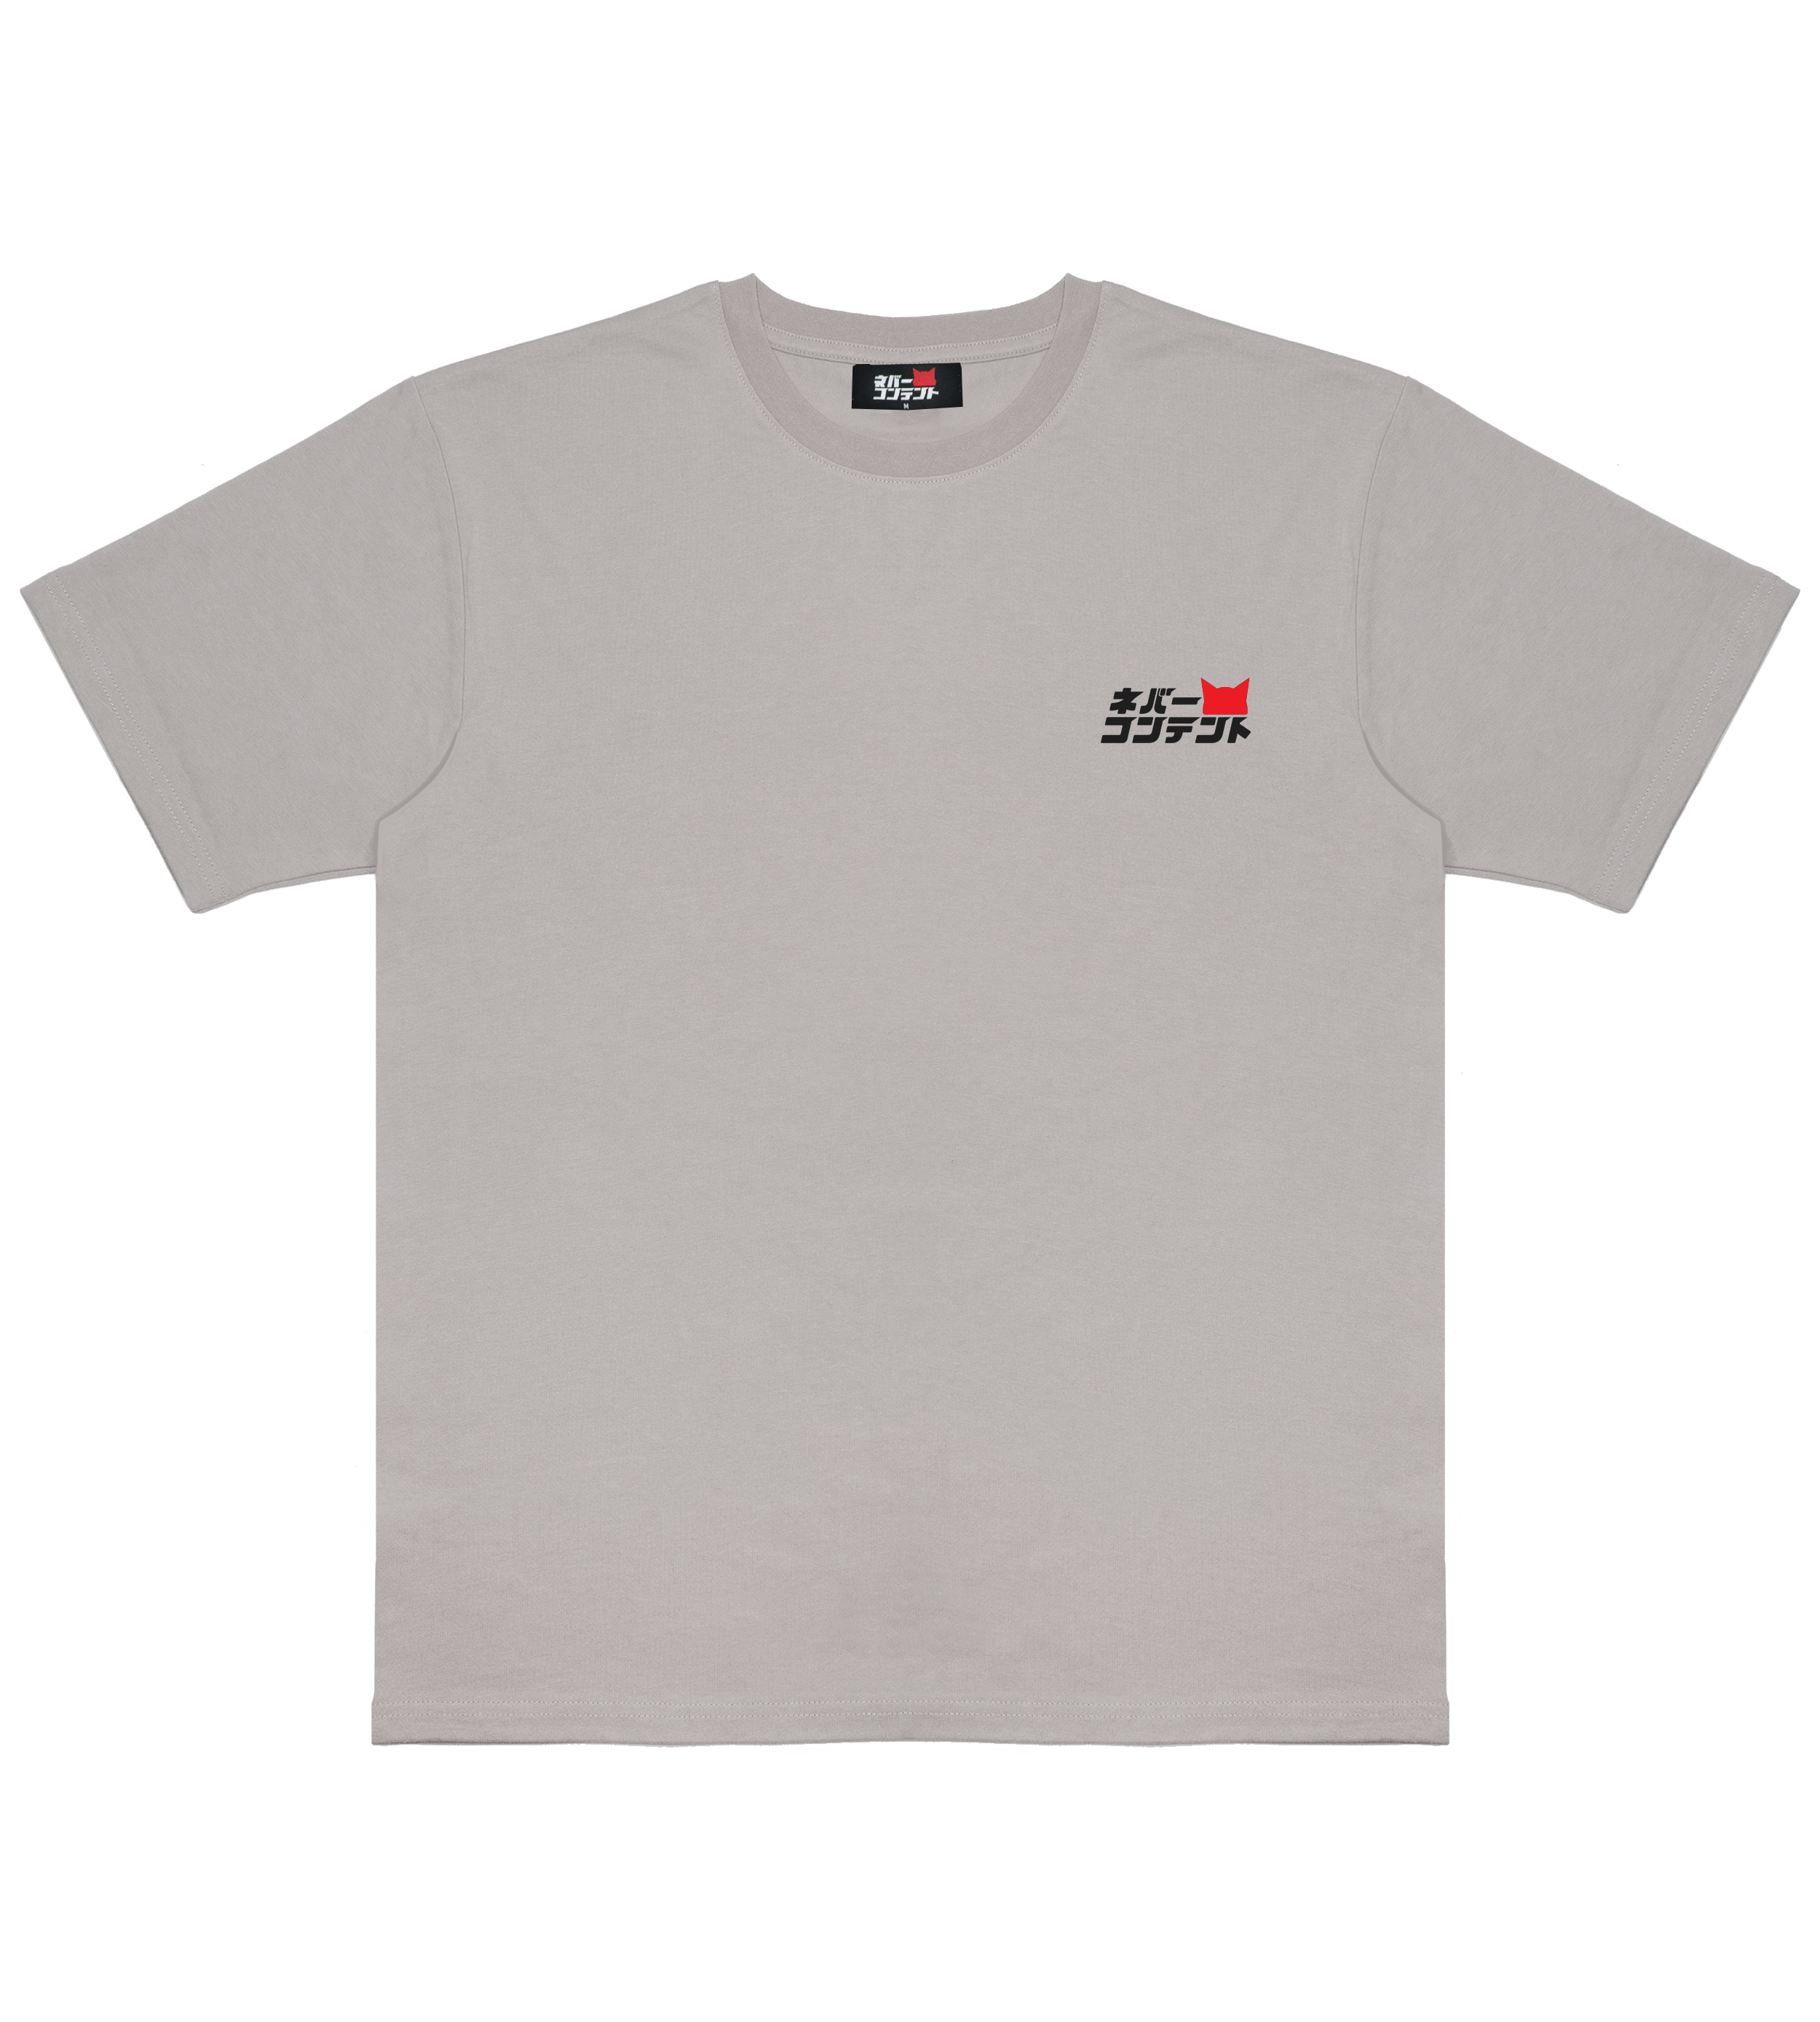 CSB swift - Smoke Shirt